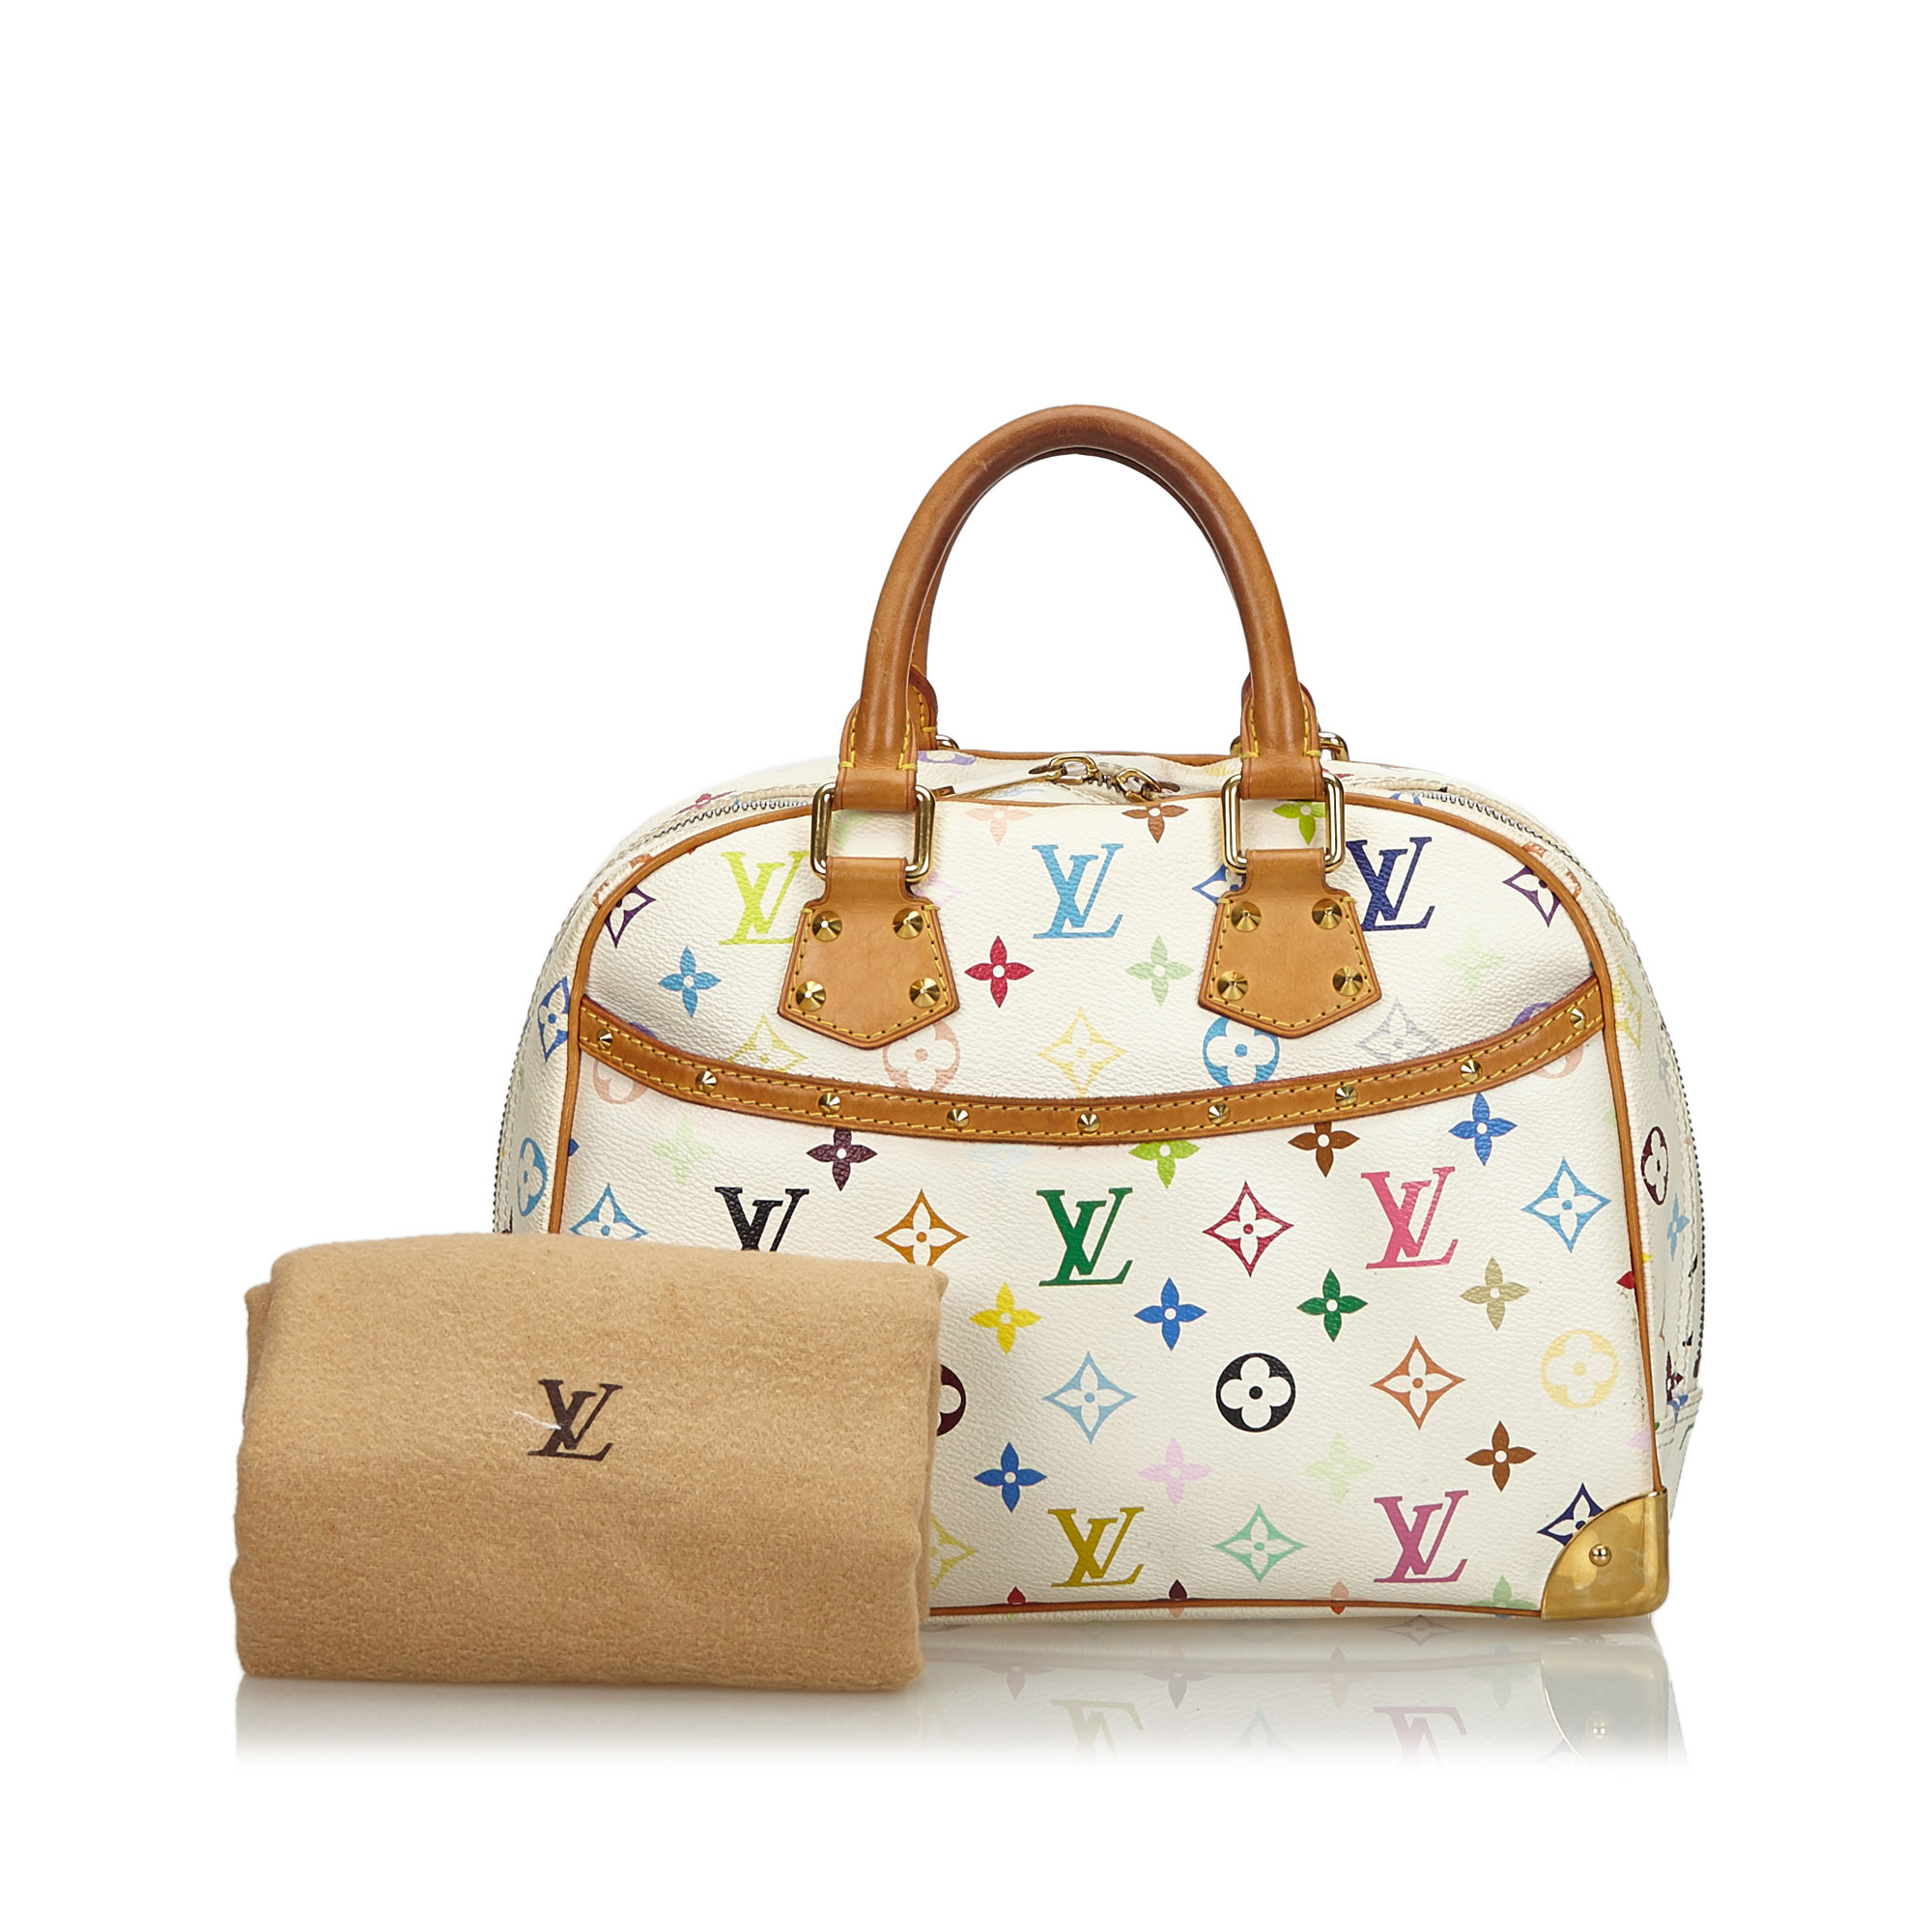 Louis Vuitton Trouville Monogram Canvas Handbag